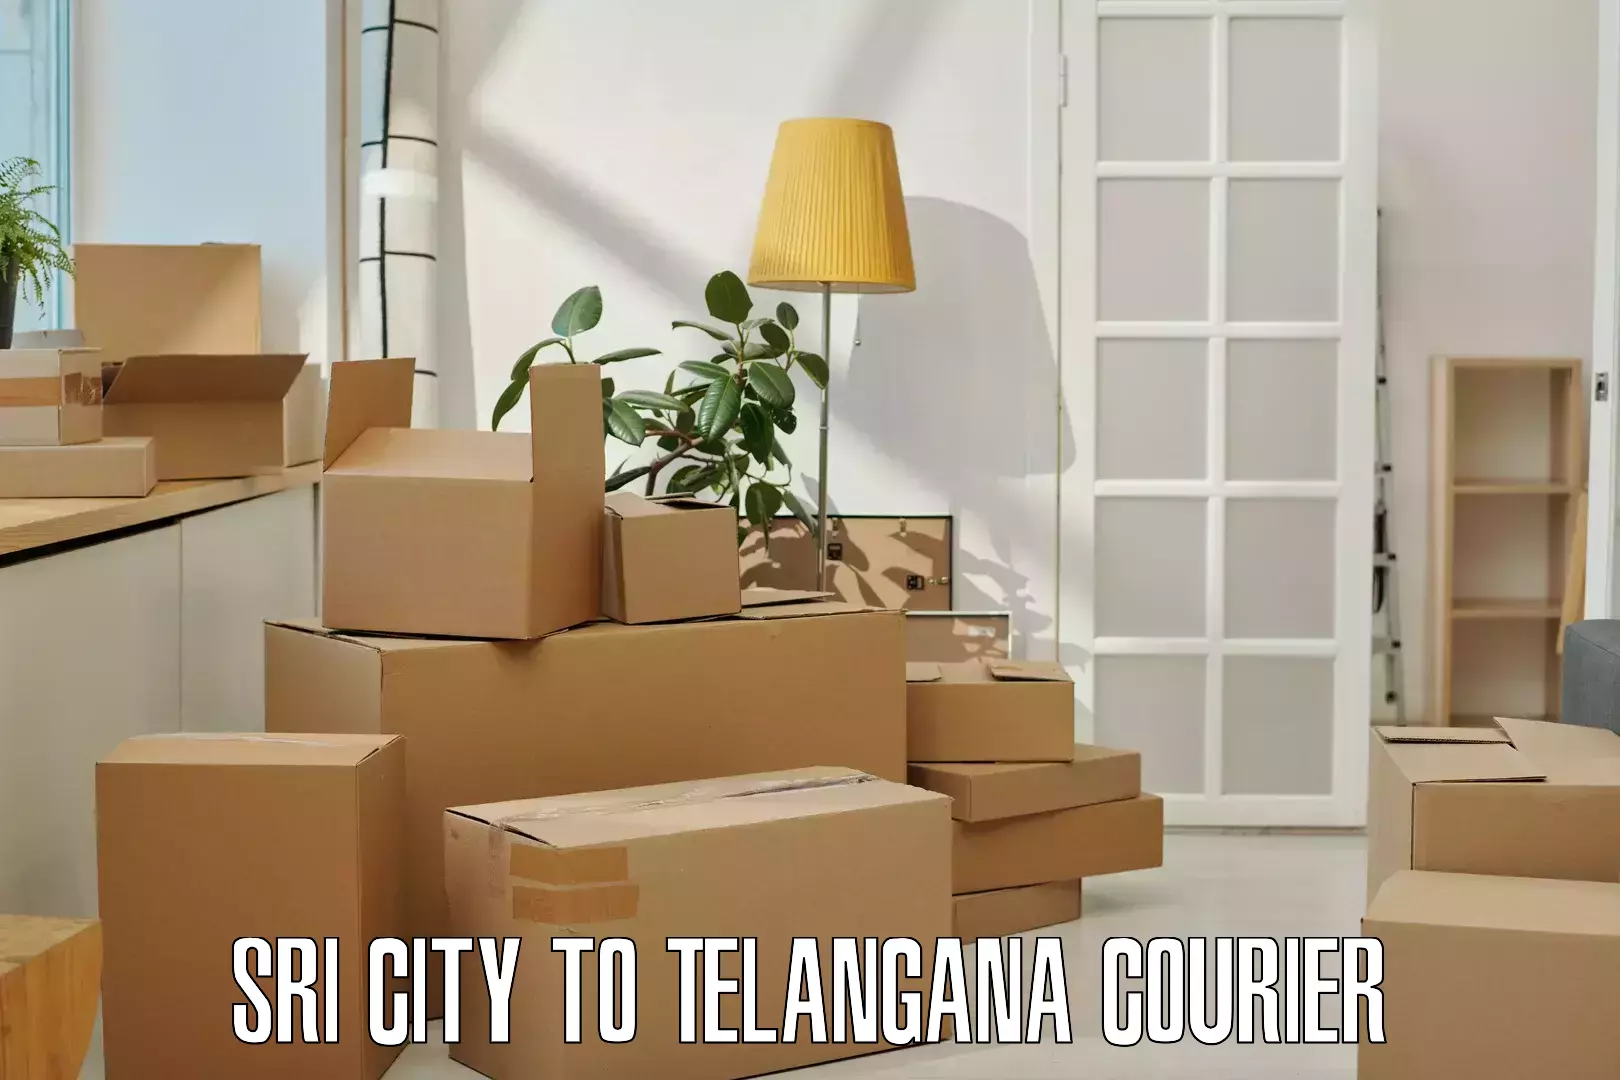 Efficient parcel transport Sri City to Vikarabad